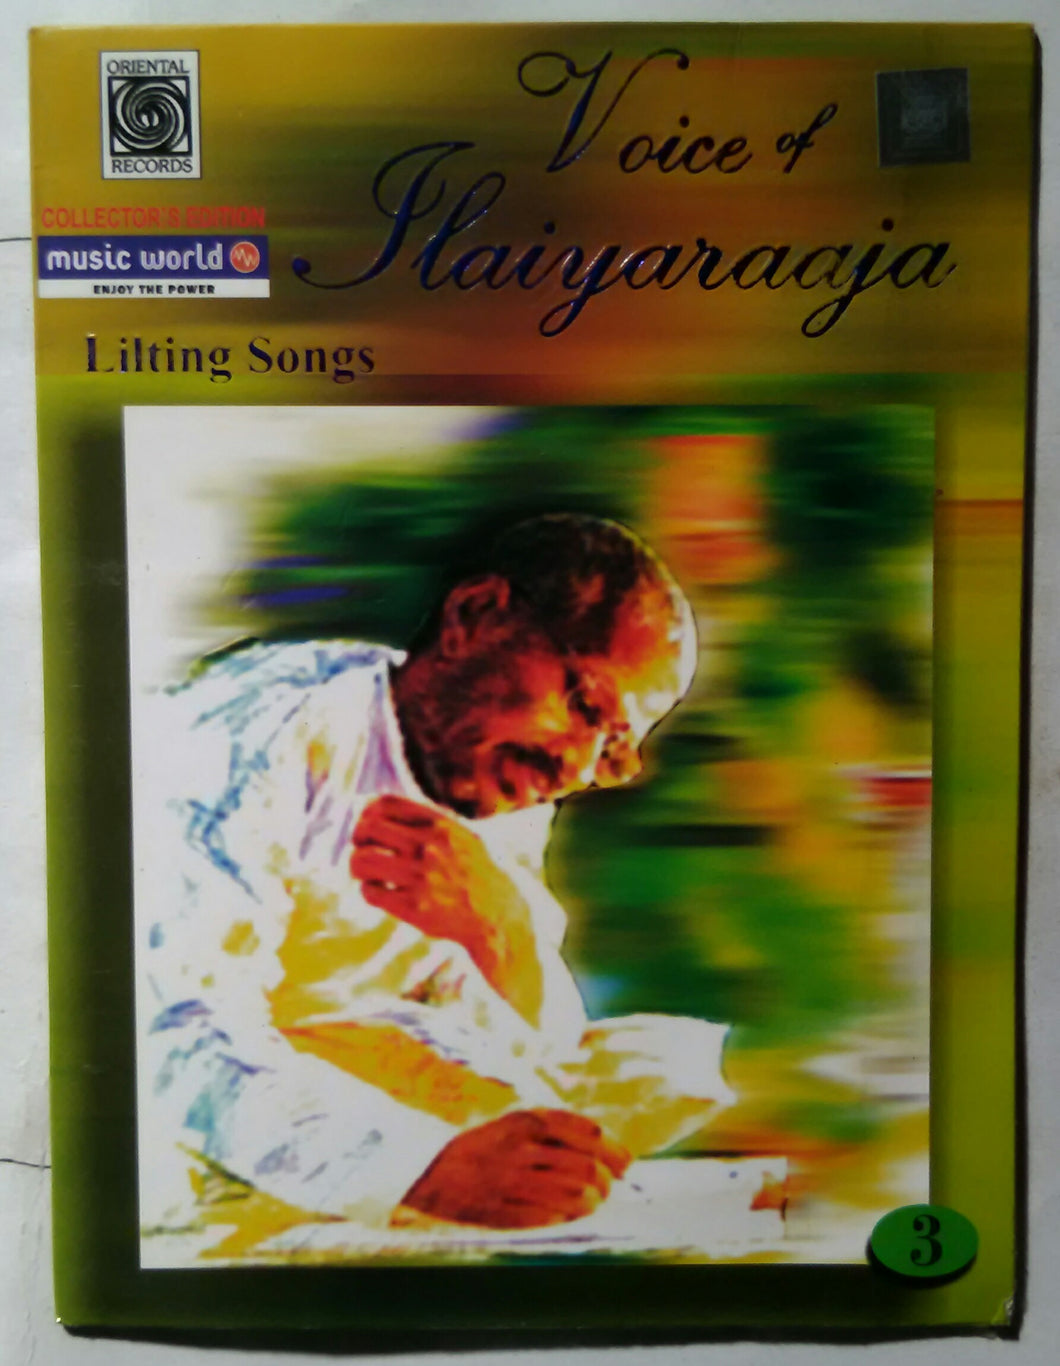 Voice Of ILYARAAJA - Lilting Songs